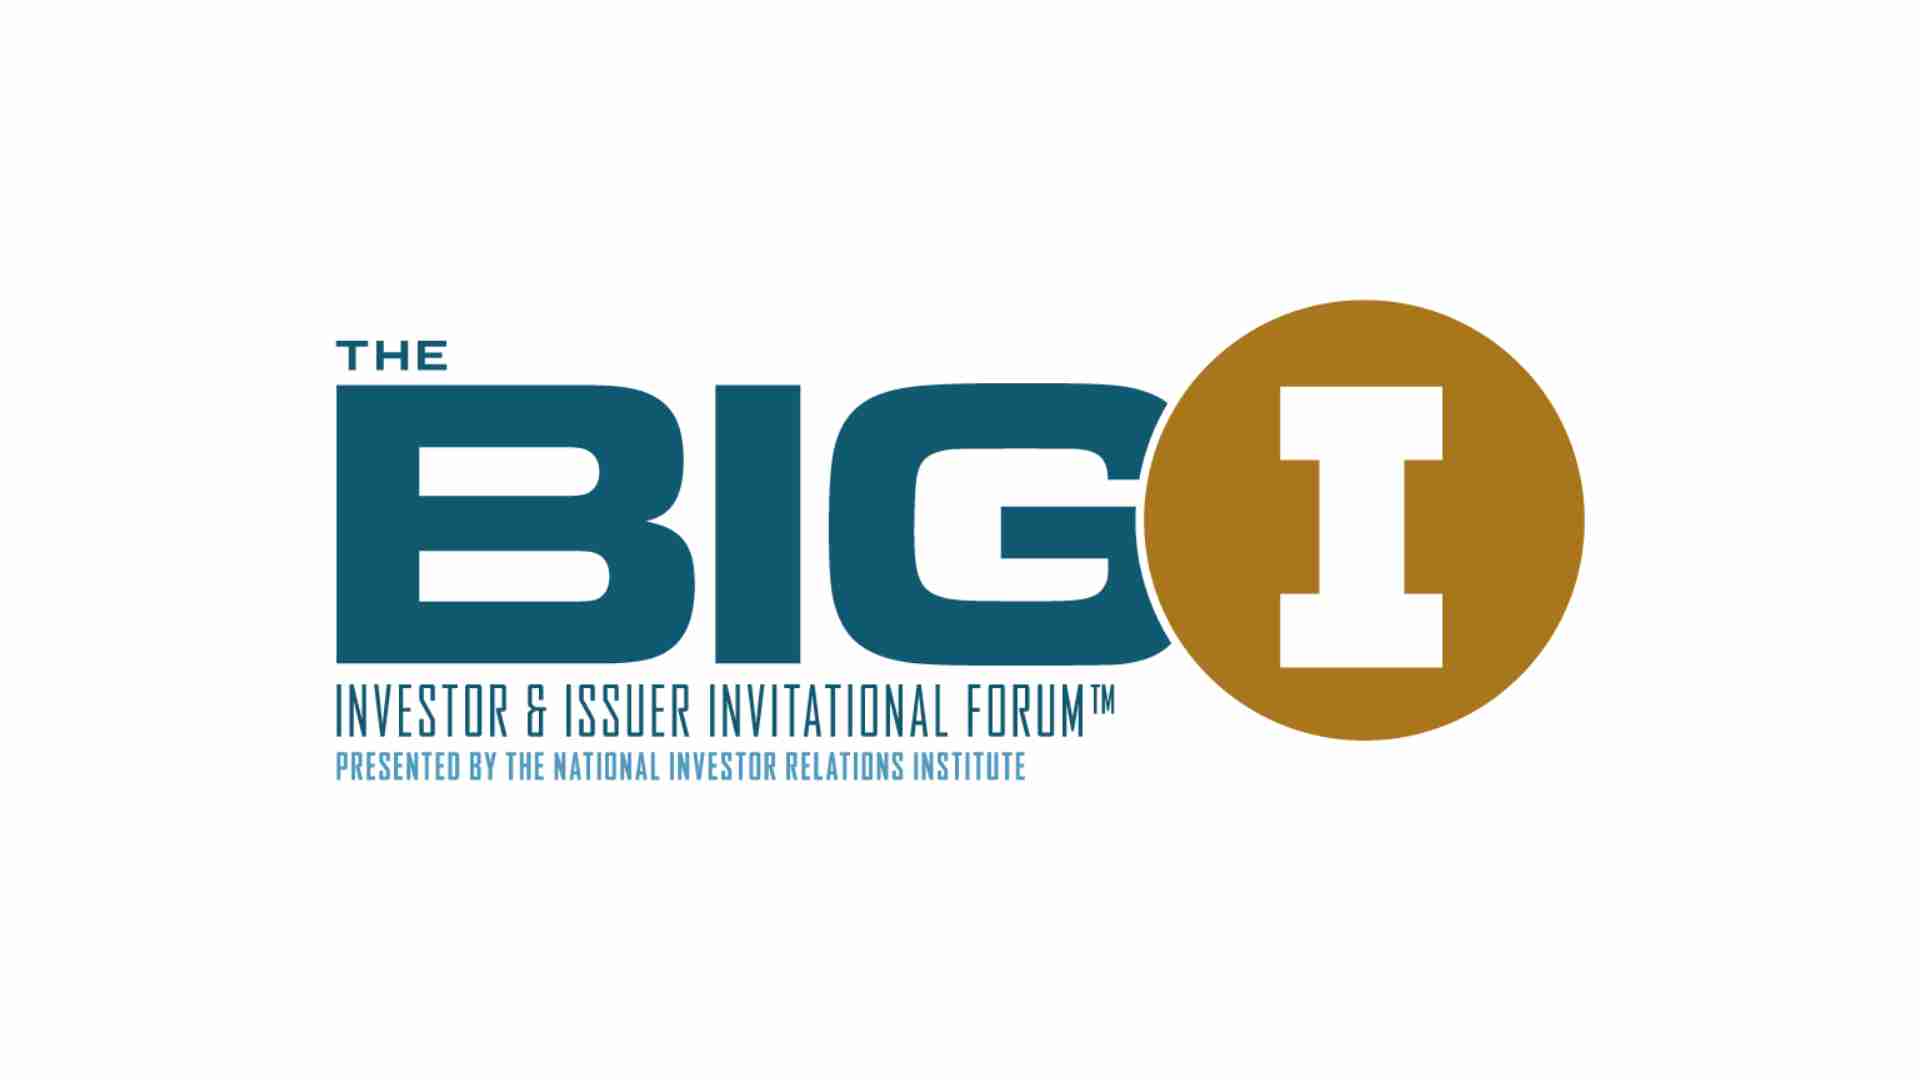 Big I logo